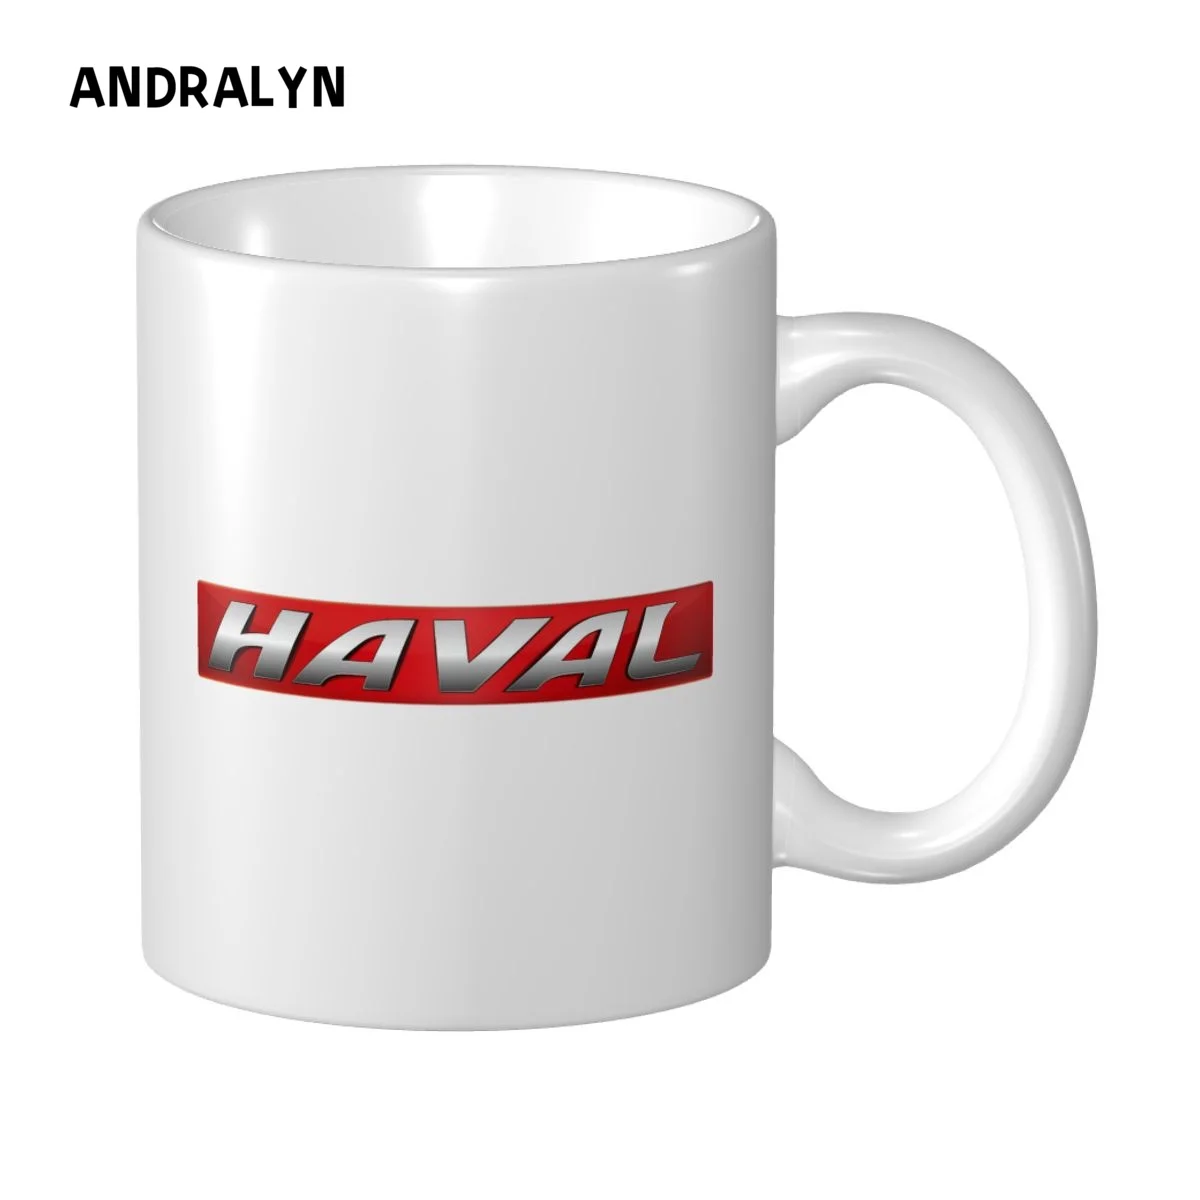 

Персонализированная кружка с логотипом Haval, керамическая кофейная кружка 11 унций, Прямая поставка